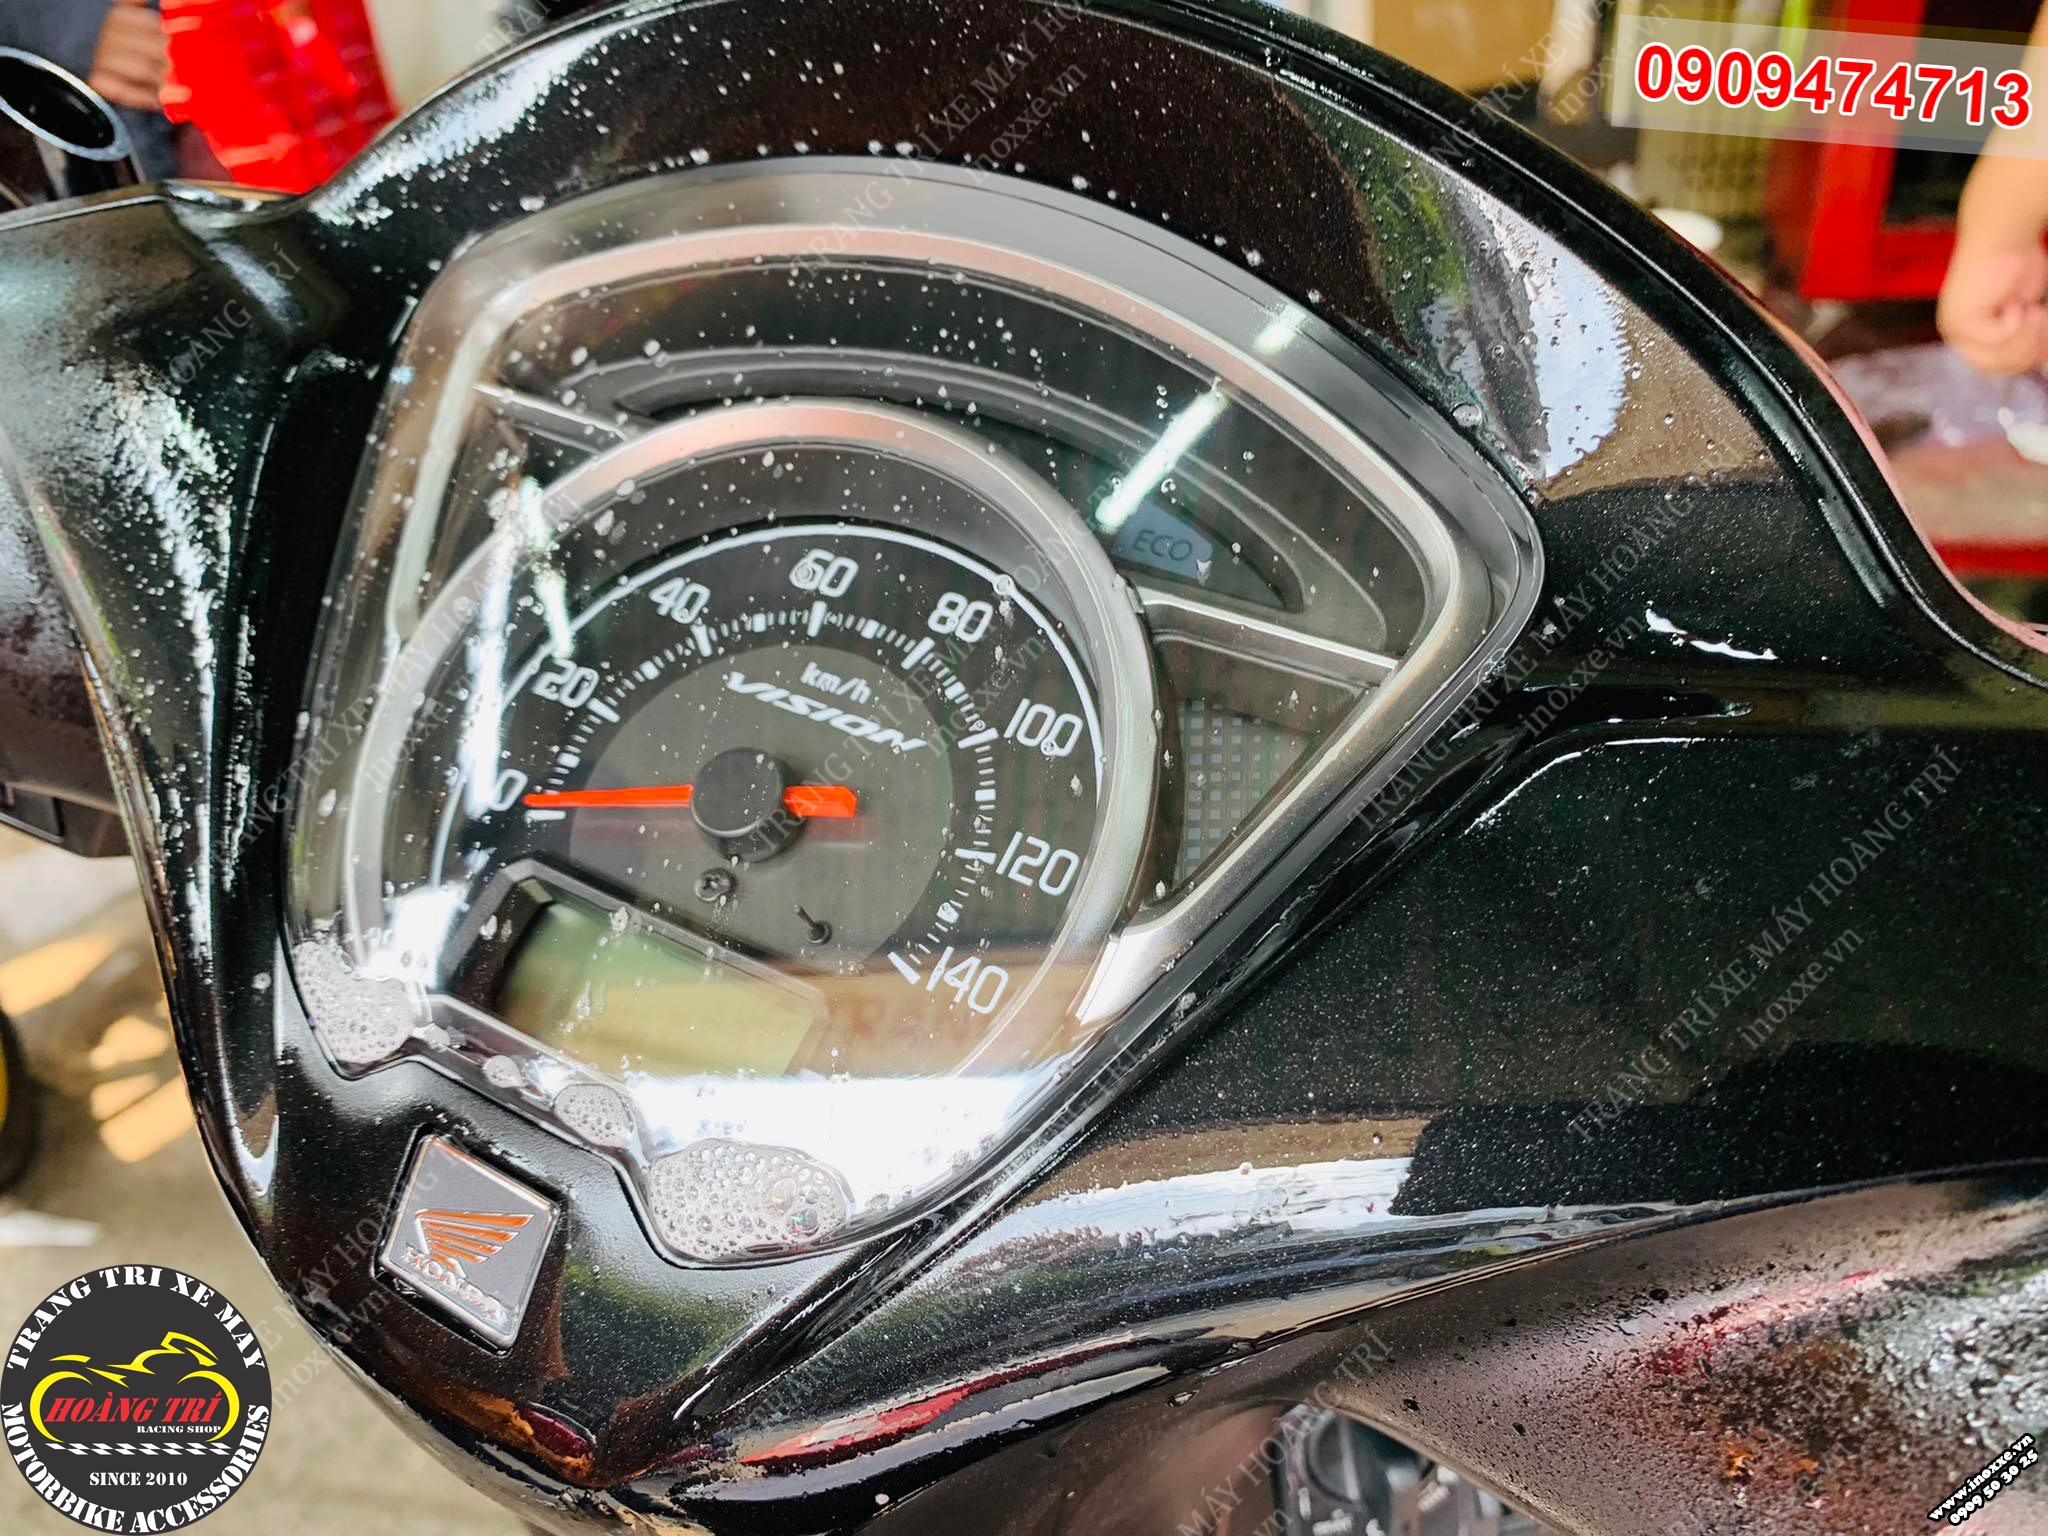 Đồng hồ xe máy classic có 2 đèn báo chức năng  CAFERACER STORE  P470218   Sàn thương mại điện tử của khách hàng Viettelpost